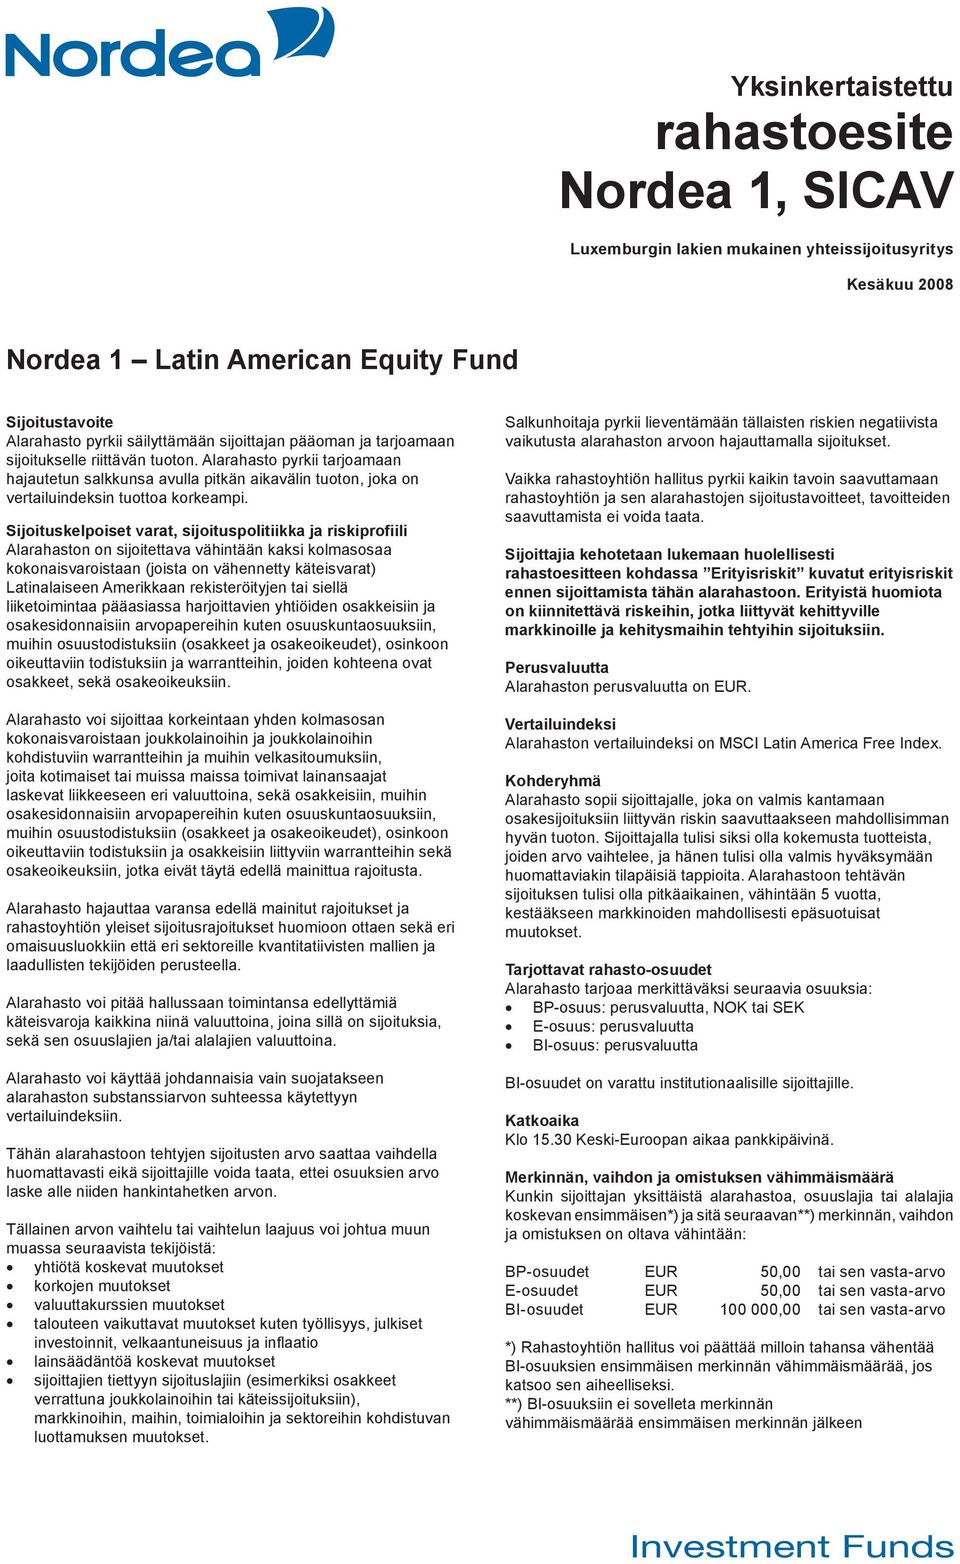 Sijoituskelpoiset varat, sijoituspolitiikka ja riskiprofiili Alarahaston on sijoitettava vähintään kaksi kolmasosaa kokonaisvaroistaan (joista on vähennetty käteisvarat) Latinalaiseen Amerikkaan